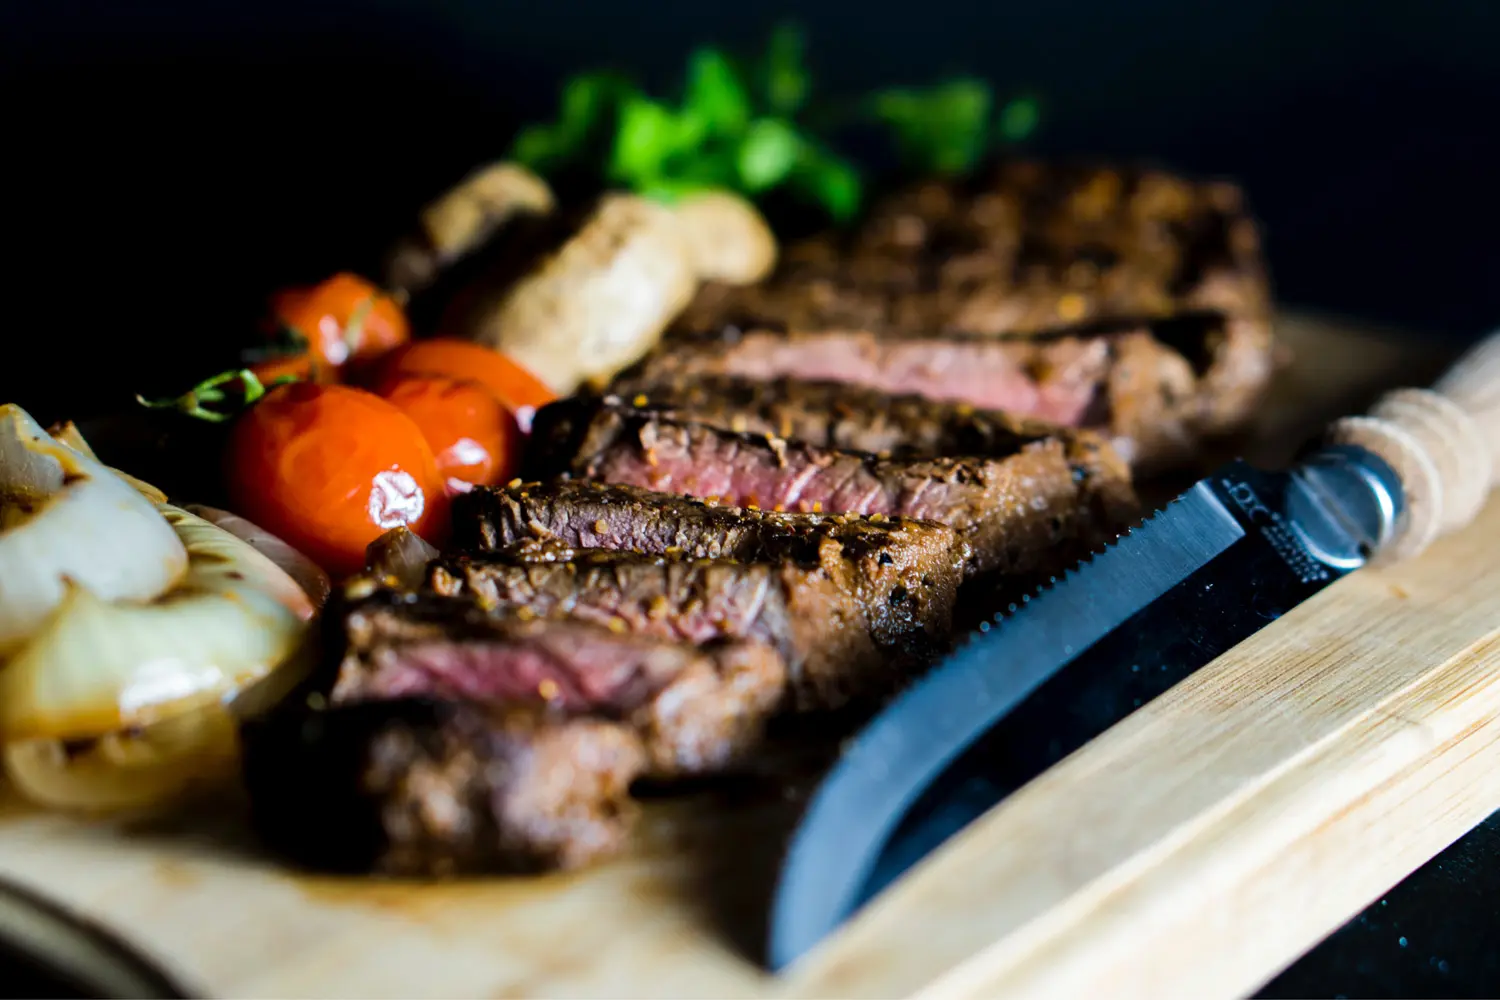 Sliced Steak with Vegetables